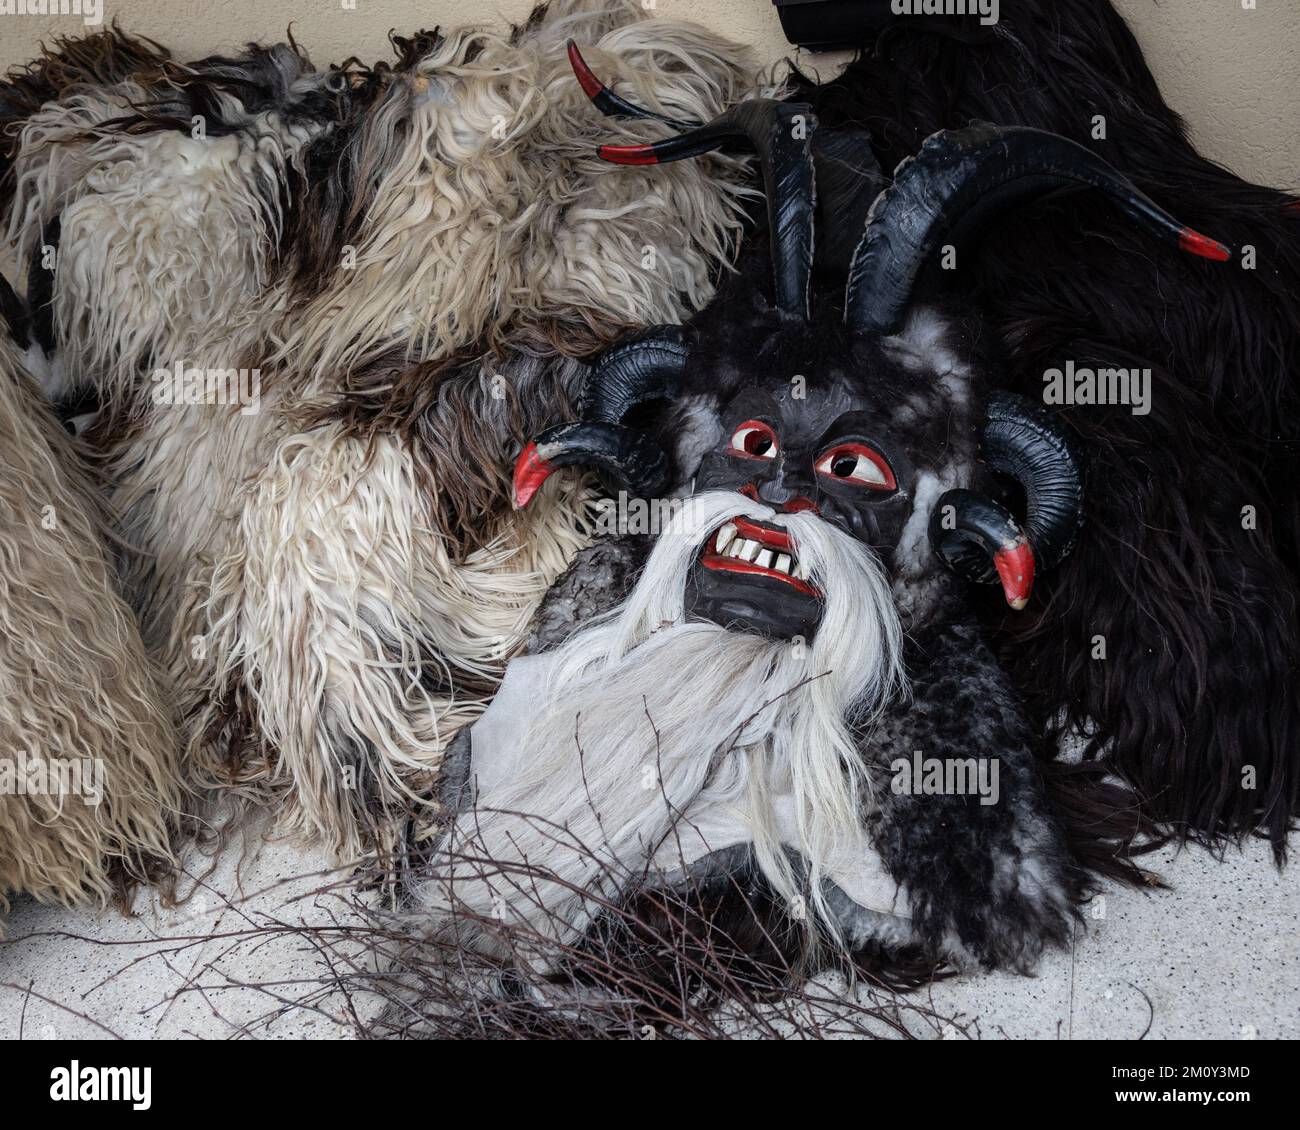 Masques et peaux d'animaux pour des images de Krampus, héros folkloriques des vacances de Noël dans les régions montagneuses alpines Banque D'Images